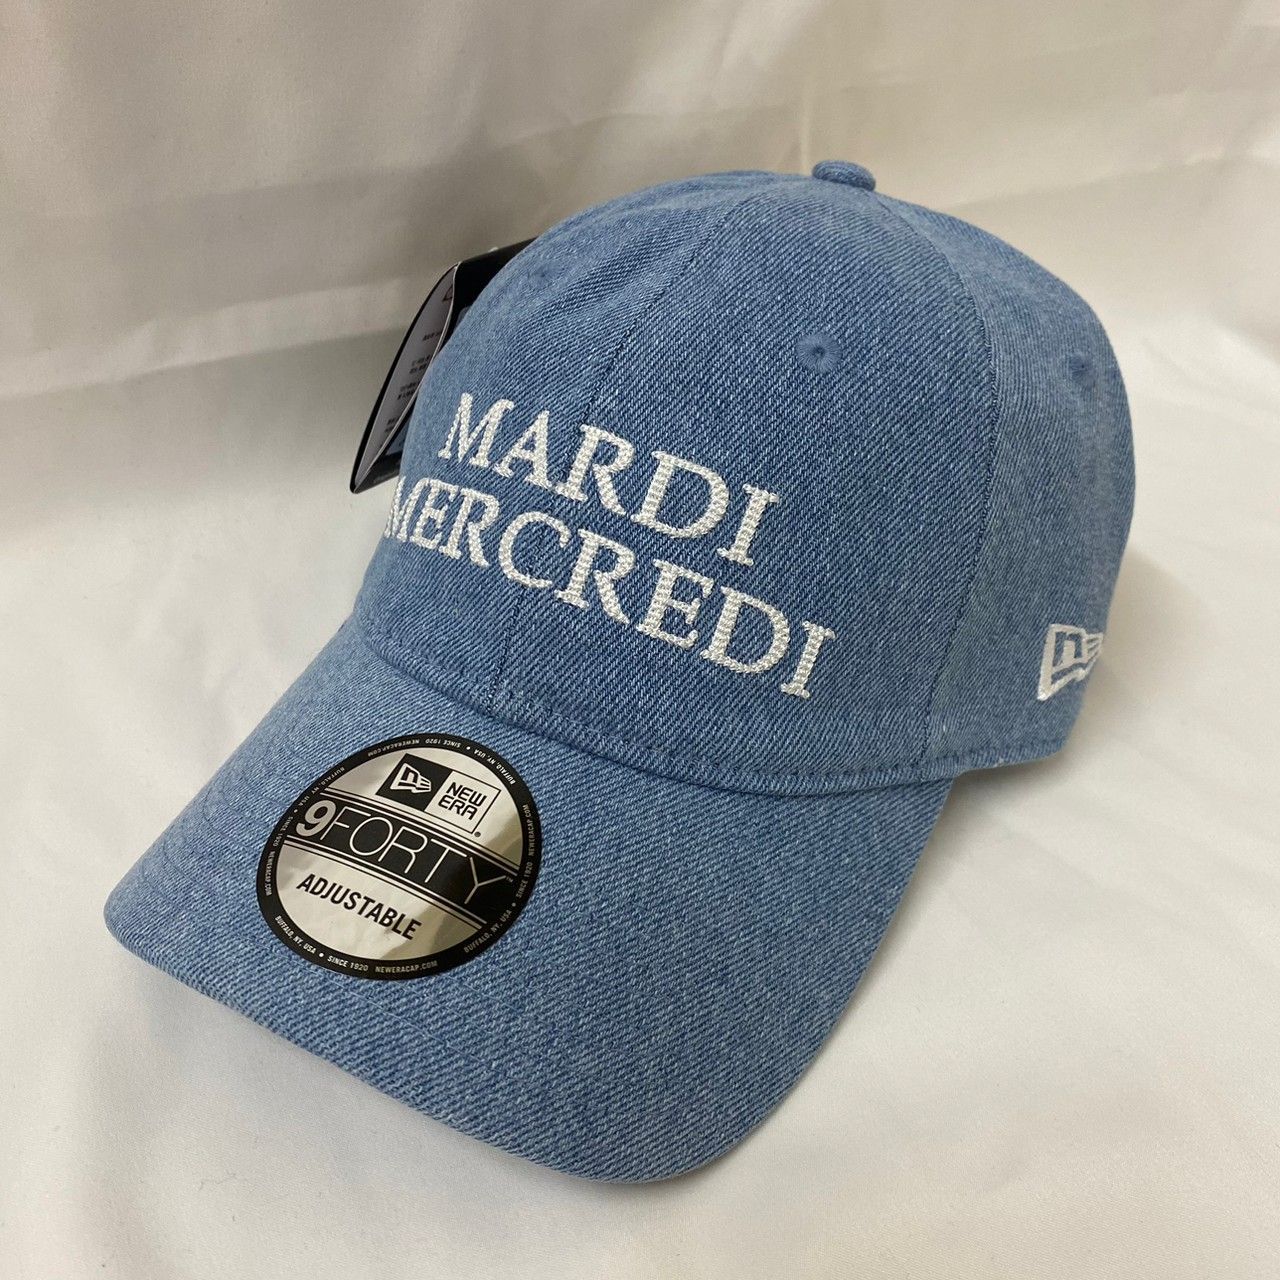 Mardi Mercredi キャップ ブラック - 帽子